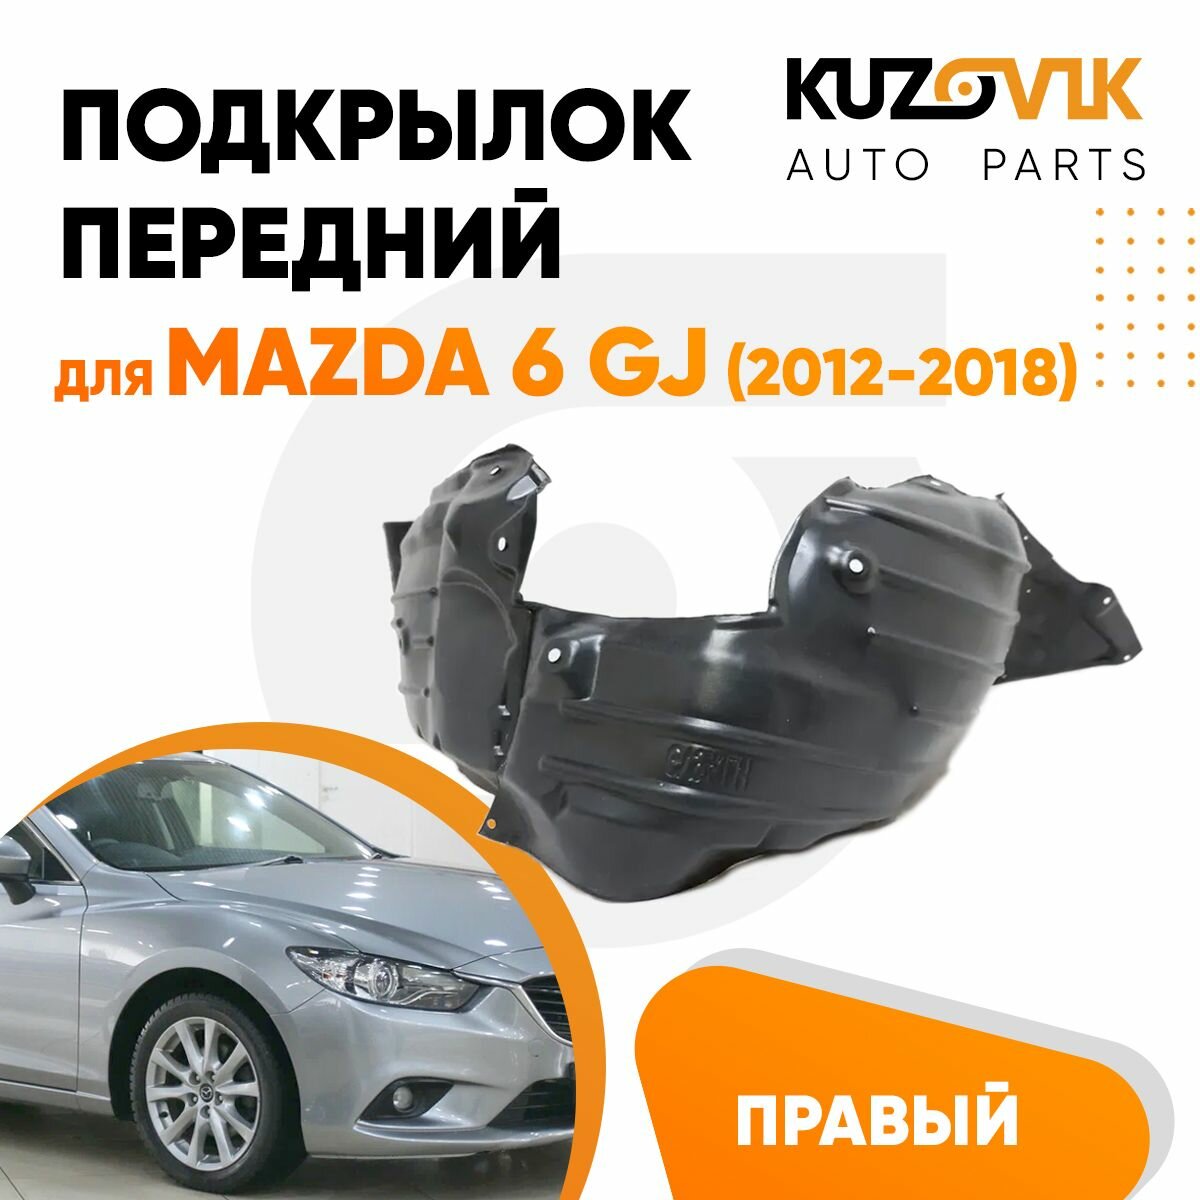 Подкрылок передний для Мазда Mazda GJ (2012-2018) правый